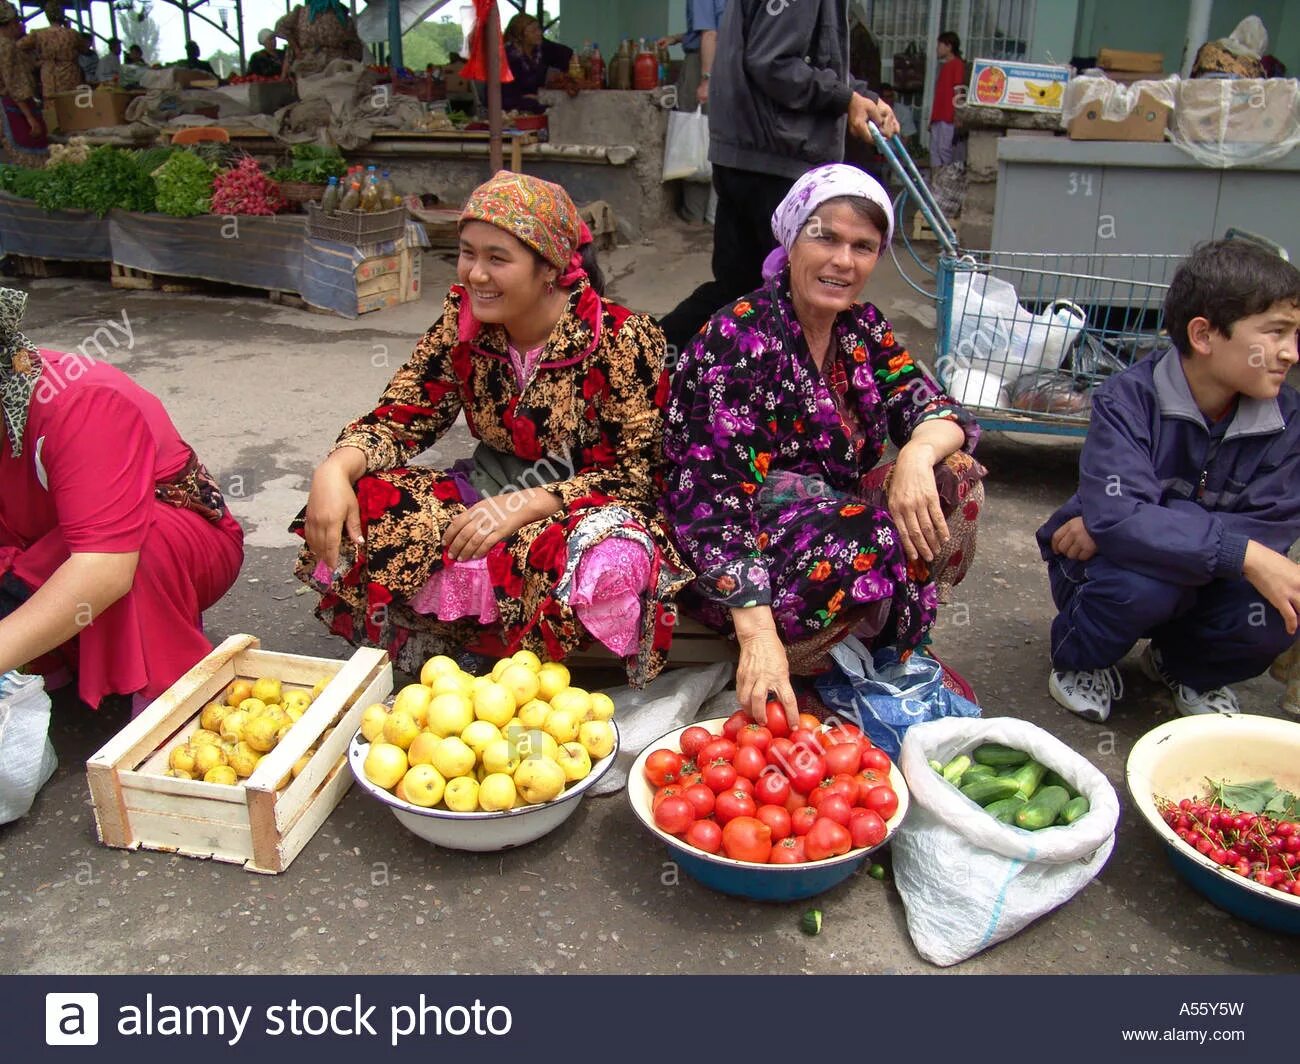 Сколько времени в узбекистане сегодня. Женщины центральной Азии базар. Время в Узбекистане сейчас. Uzbekistan stock Markets. Сечас вирема Узбекистон.